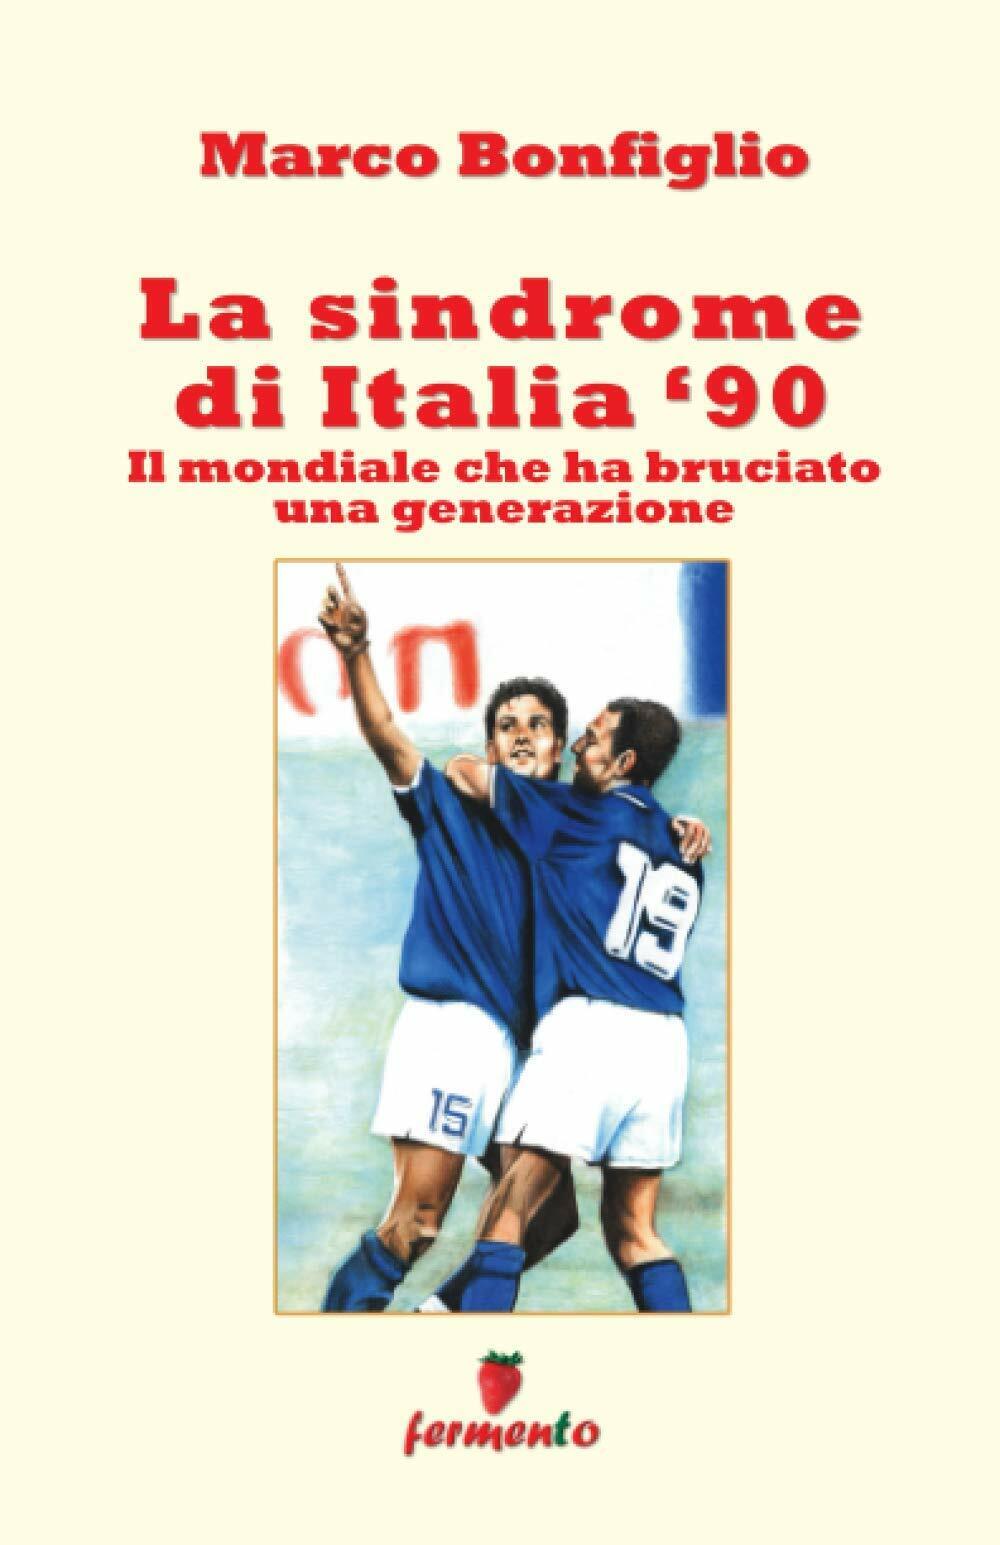 La sindrome di Italia '90 - Marco Bonfiglio - Fermento, 2014 libro usato